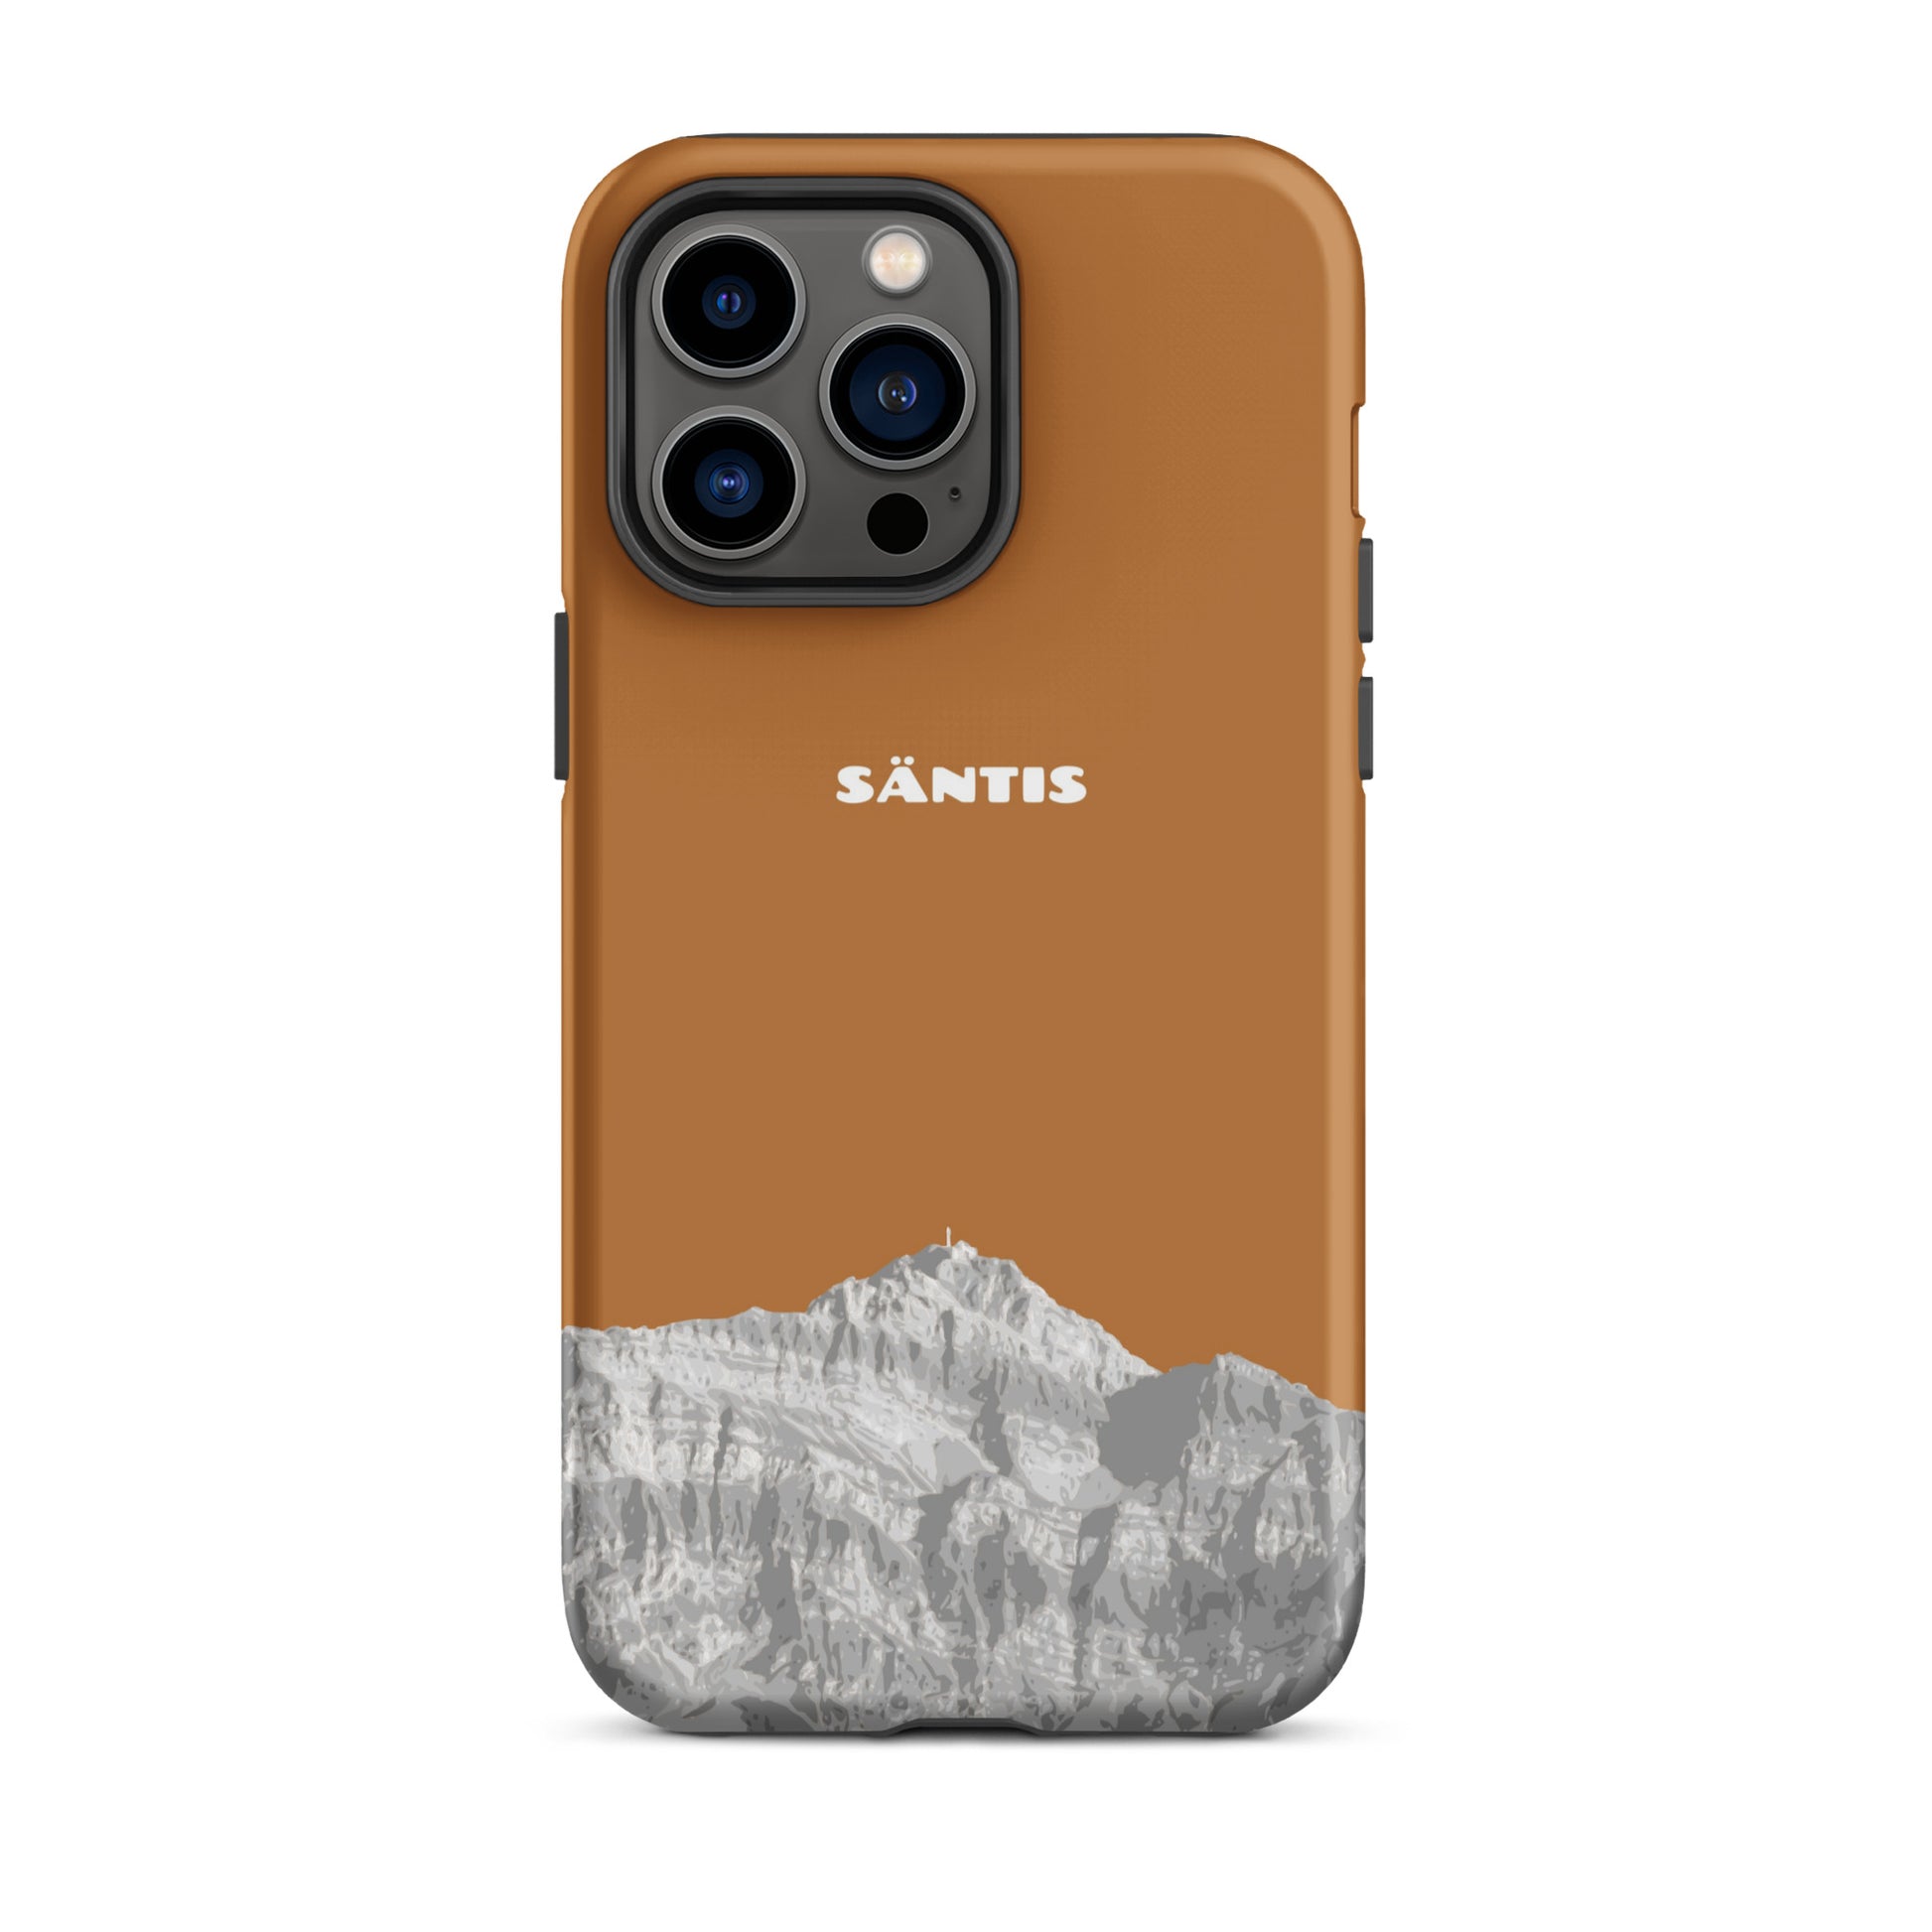 Hülle für das iPhone 14 Pro Max von Apple in der Farbe Kupfer, dass den Säntis im Alpstein zeigt.